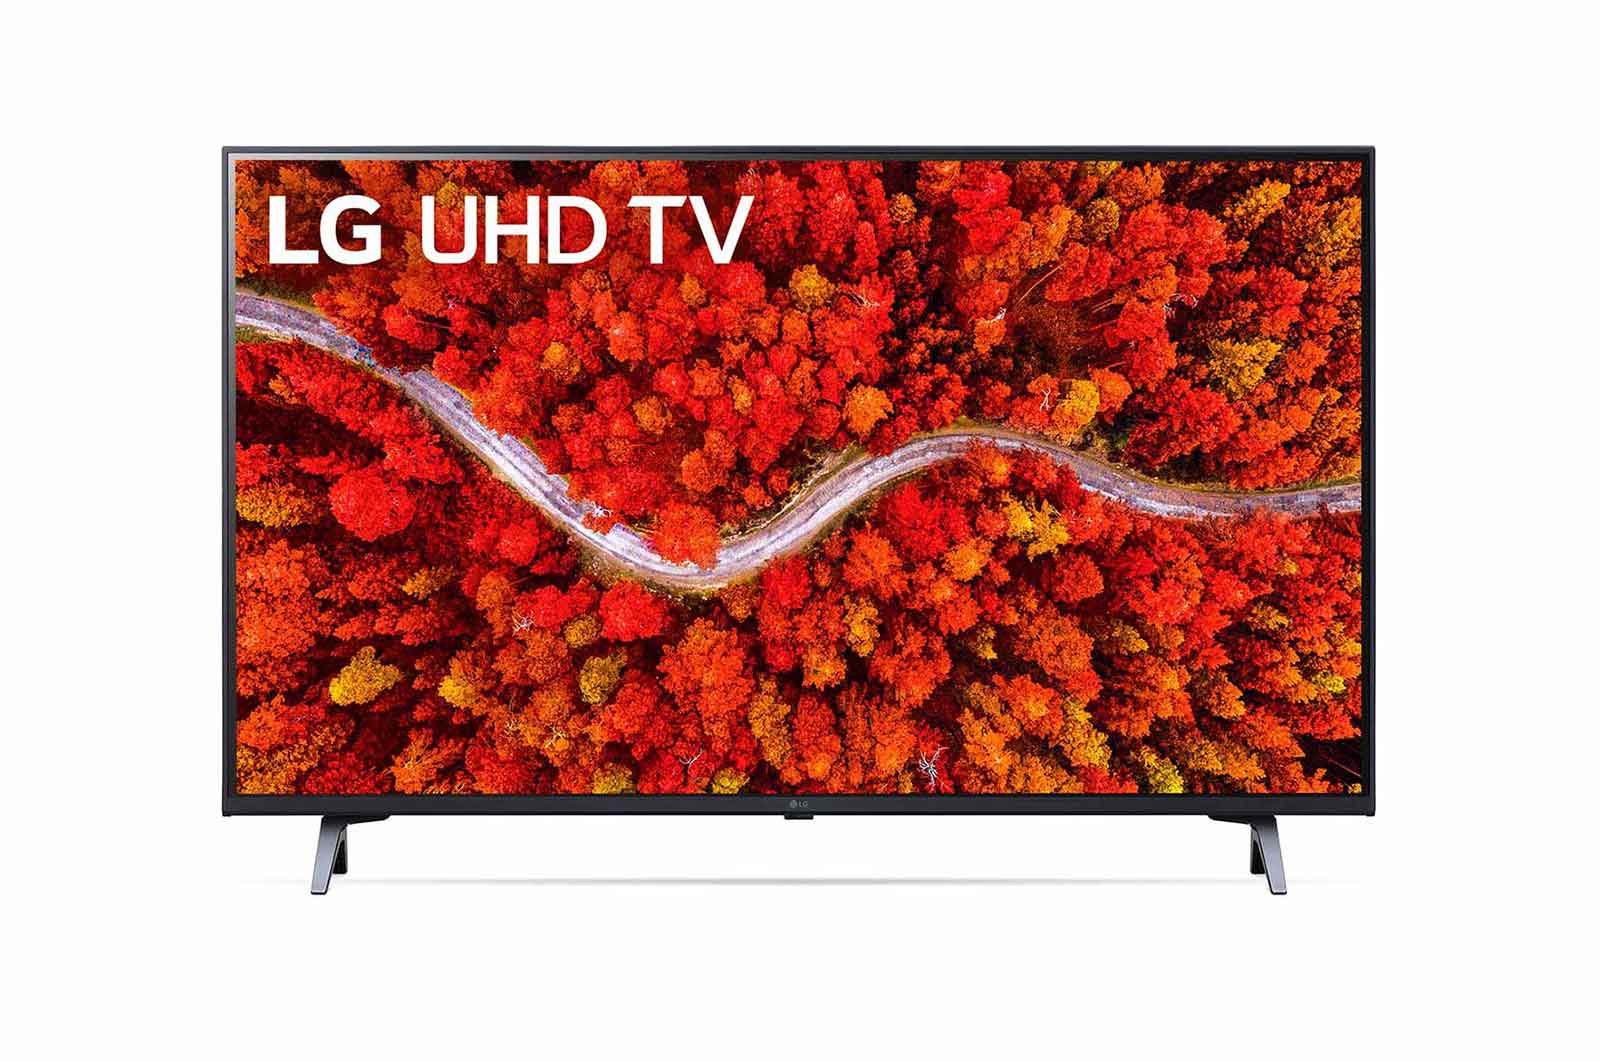 LG - LED TV 60UP8000PTB | 1 - Login Megastore